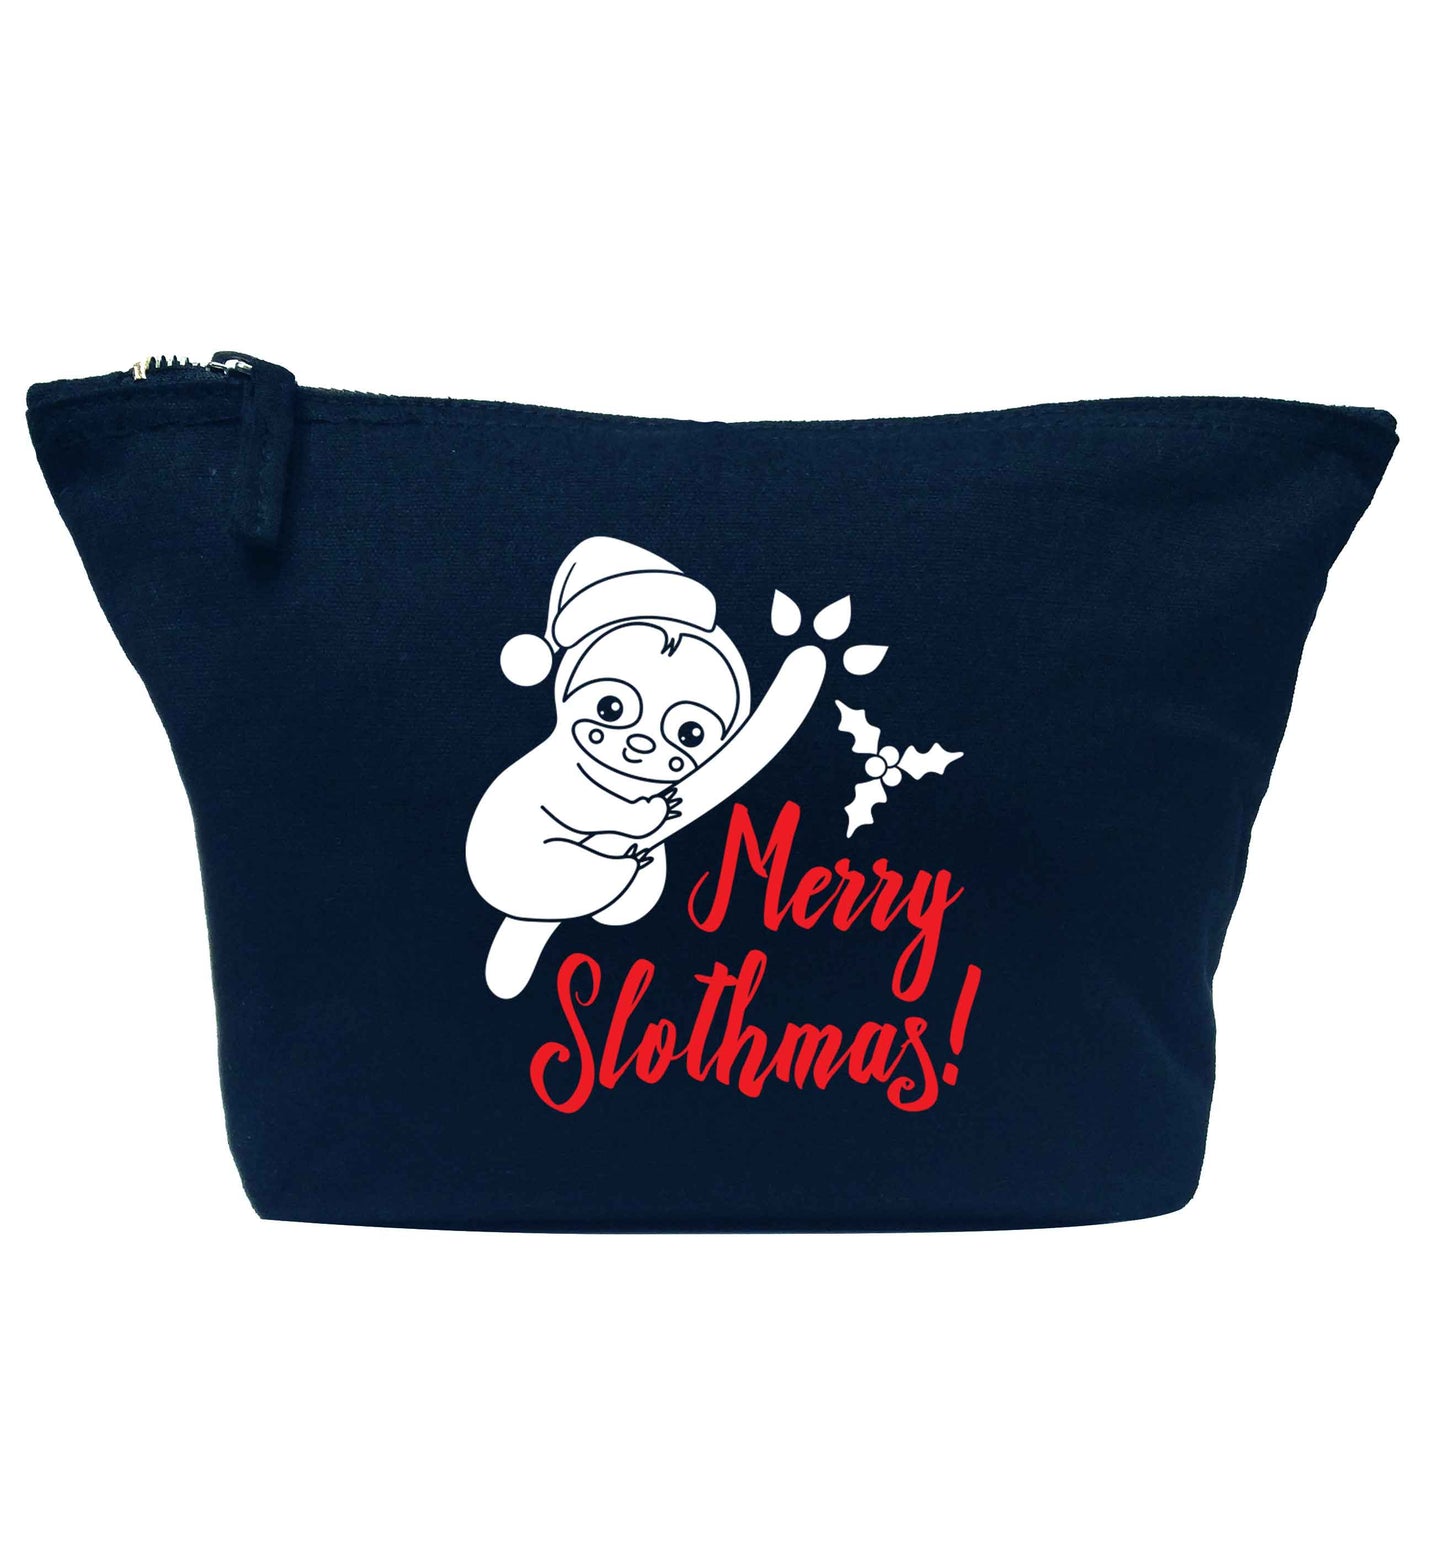 Merry Slothmas navy makeup bag